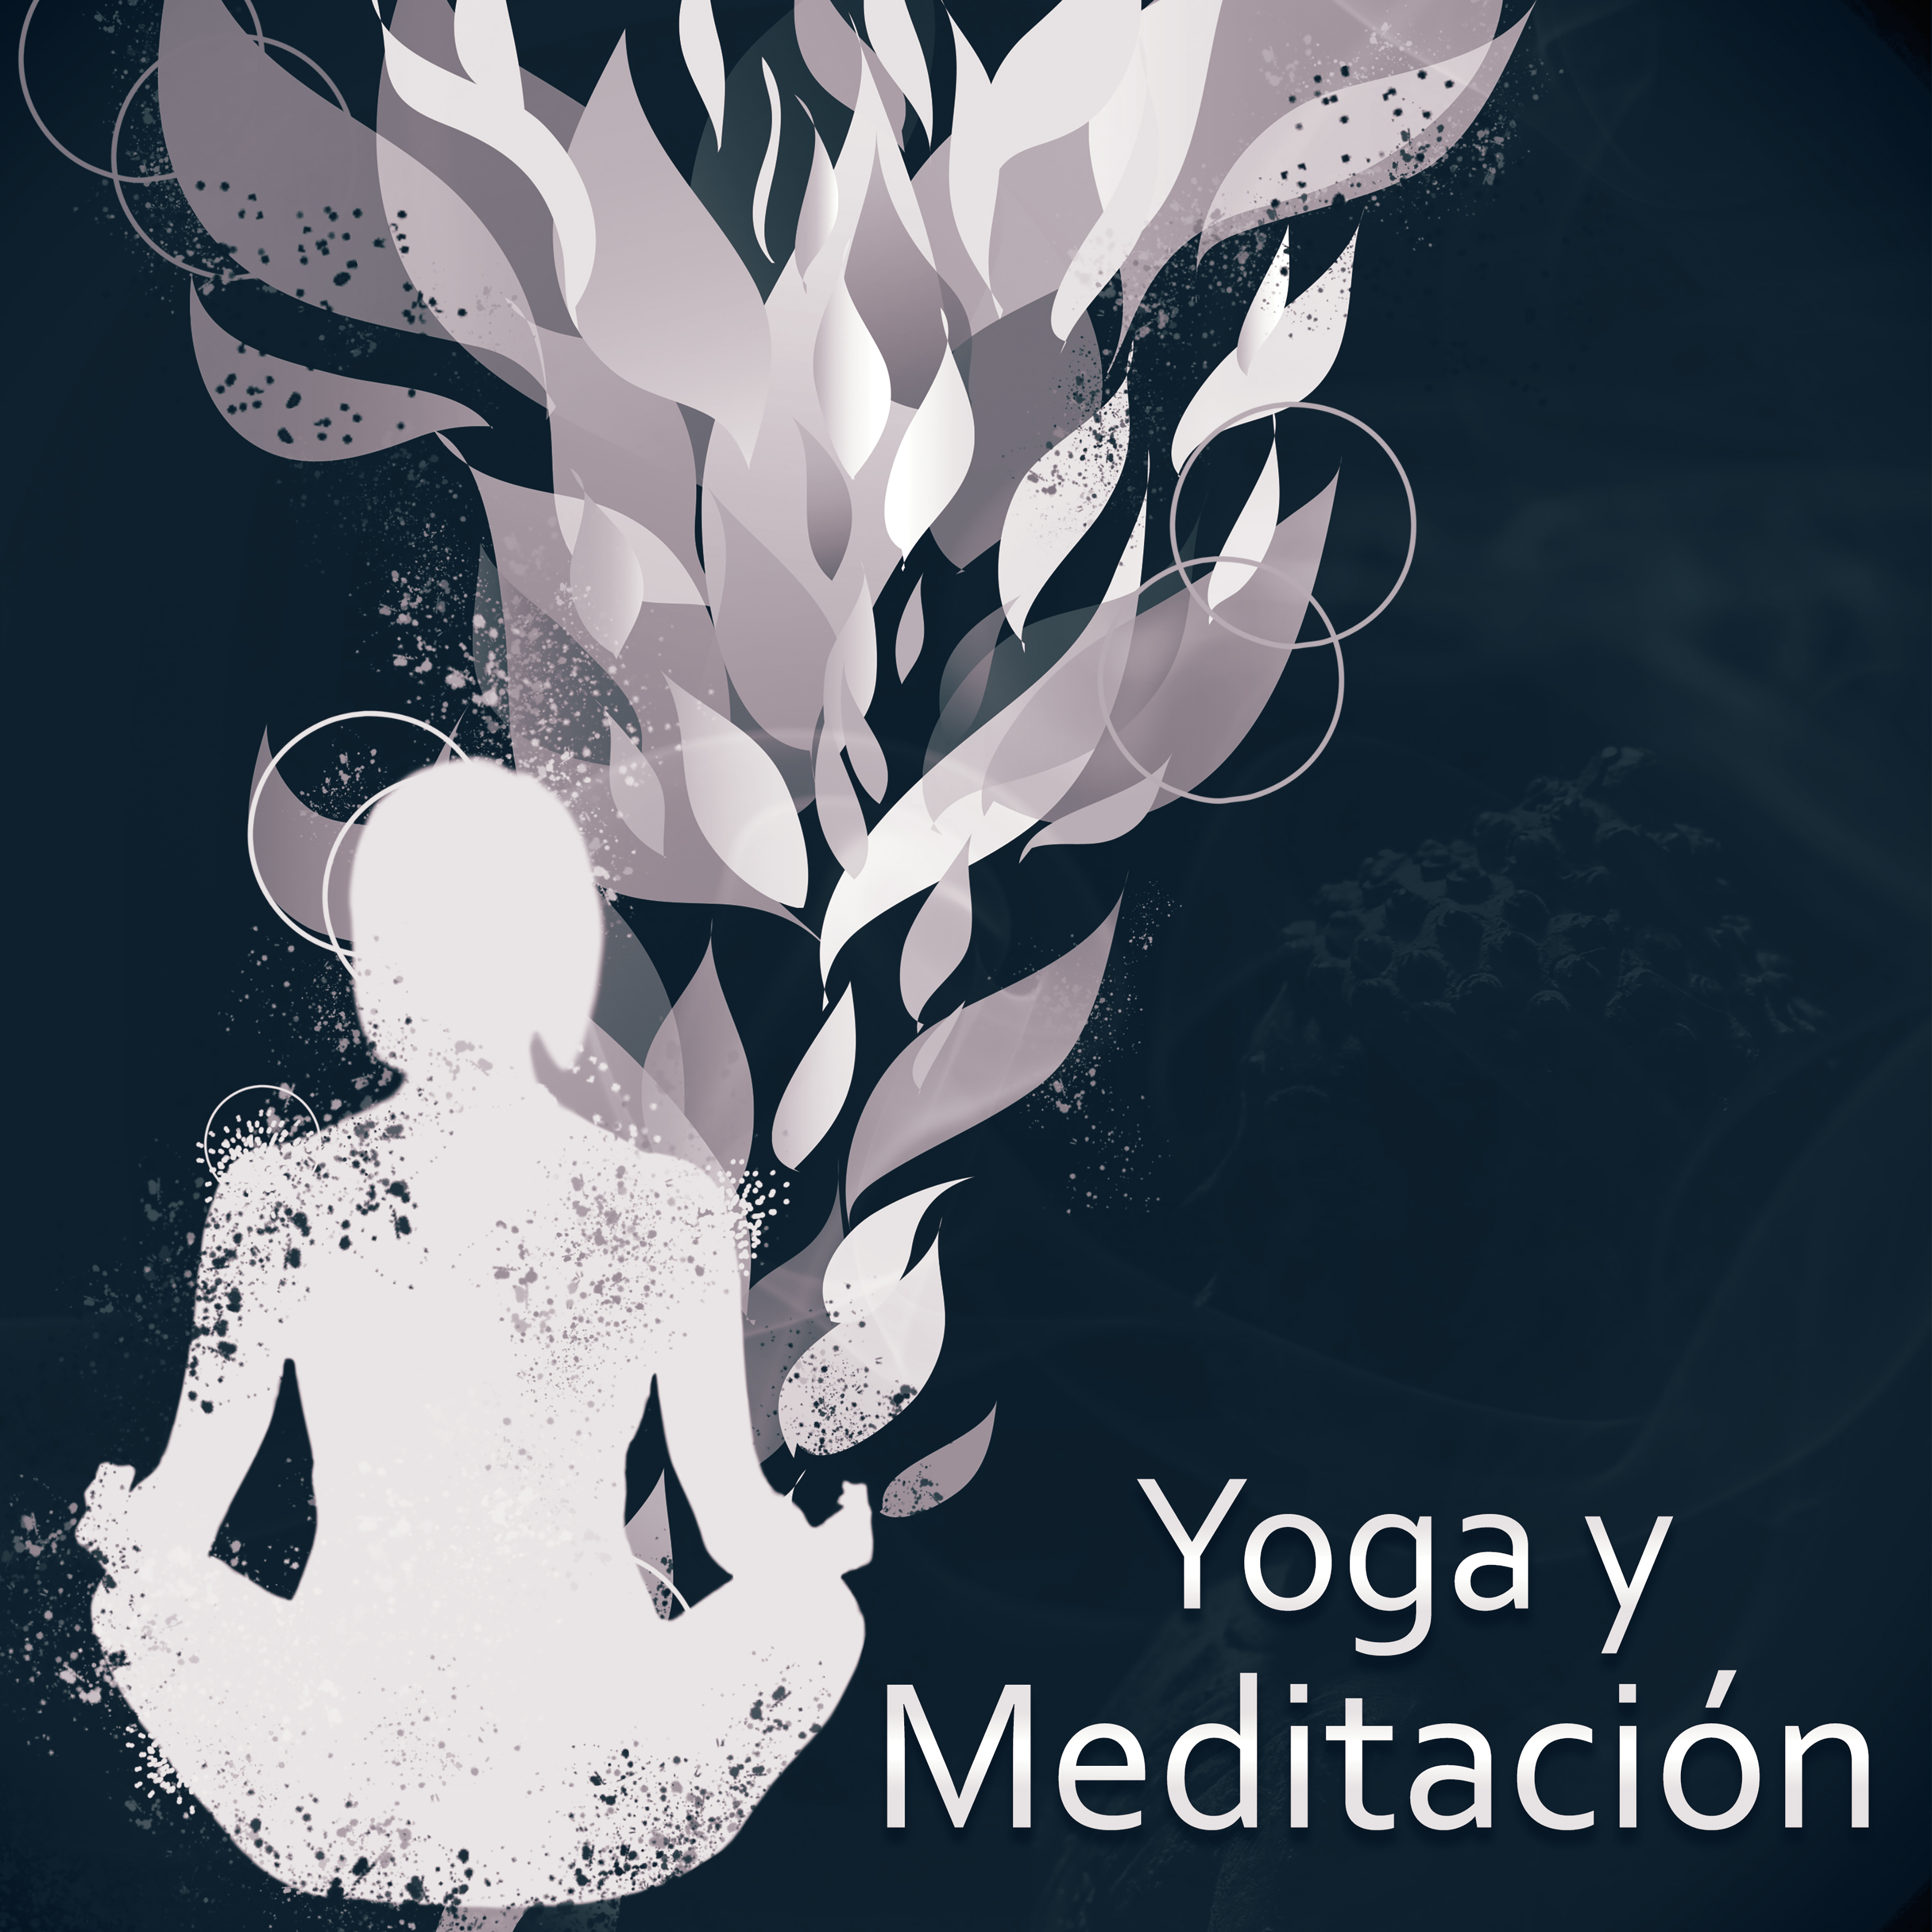 Yoga y Meditación - Música para la Meditación, el Yoga, Entrenamiento de la Mente, la Música de Relajación,  los Sonidos Suaves de la Naturaleza